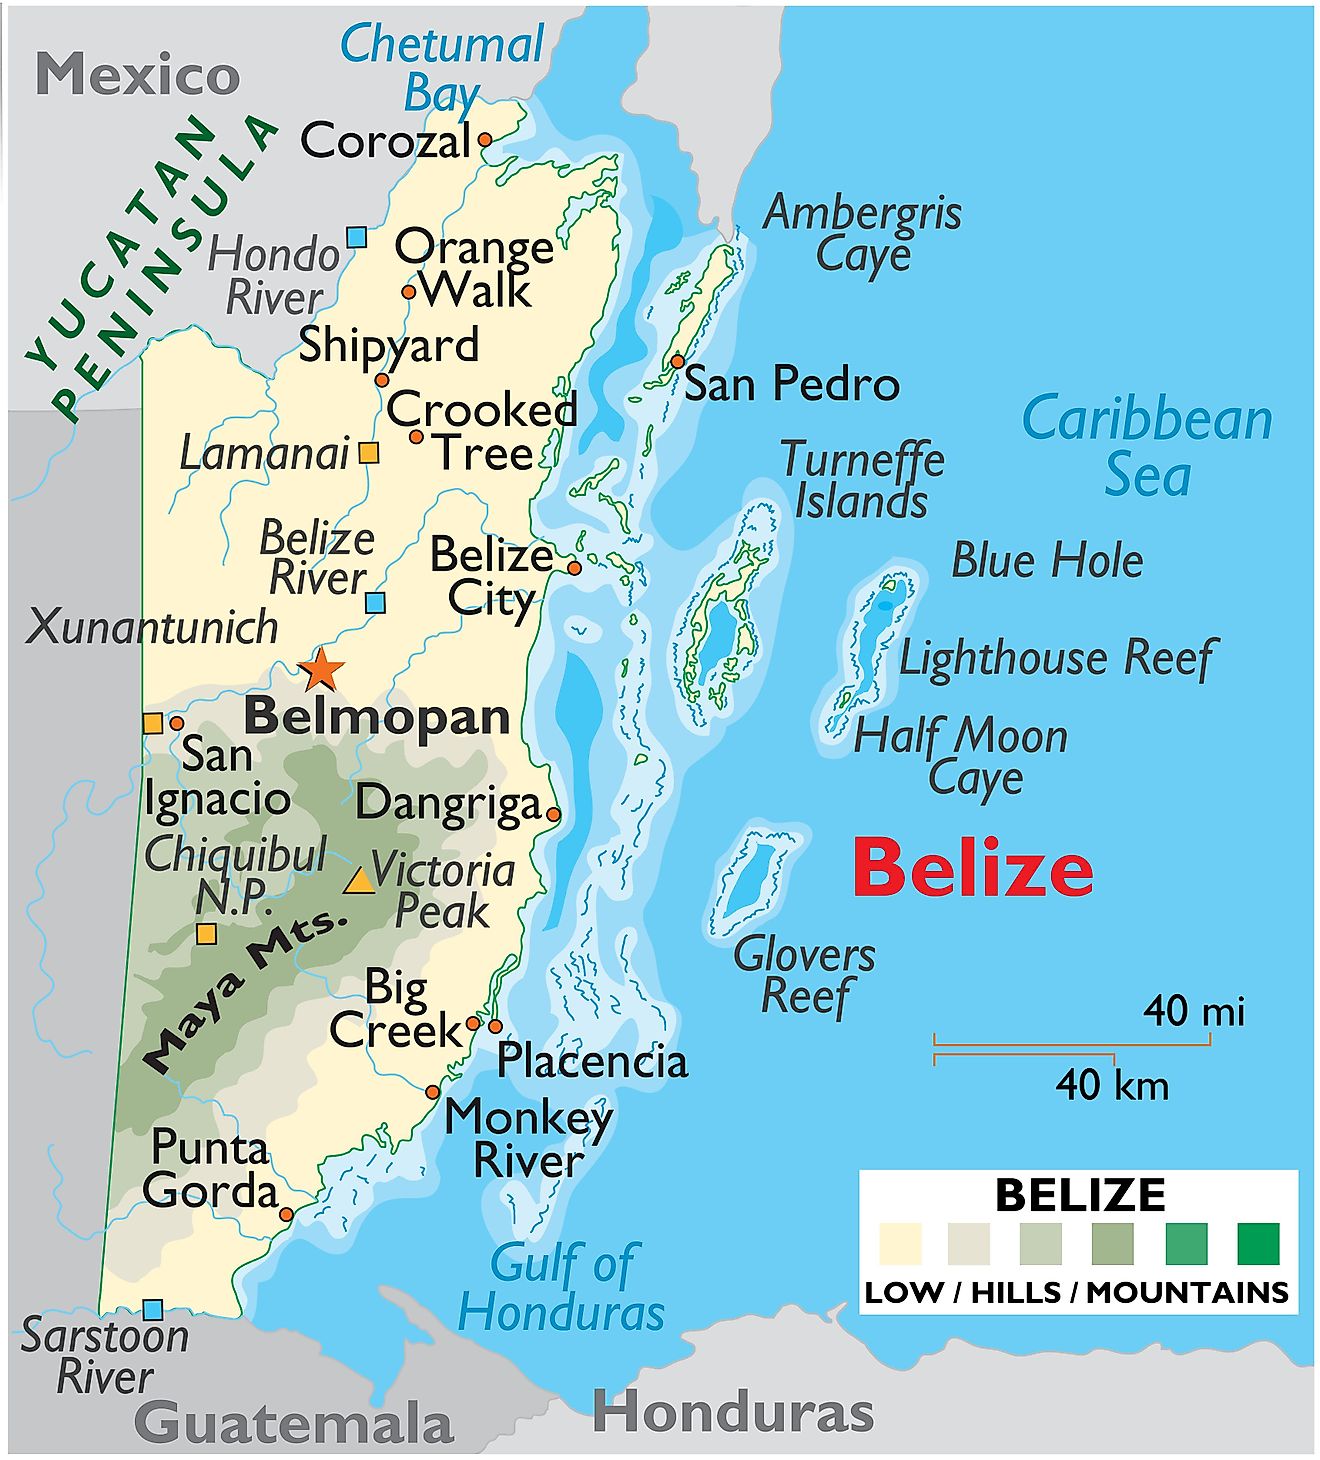 Mapa físico de Belice que muestra el relieve, los ríos principales, el Agujero Azul, arrecifes en alta mar, islas, arroyos, cayos y más.